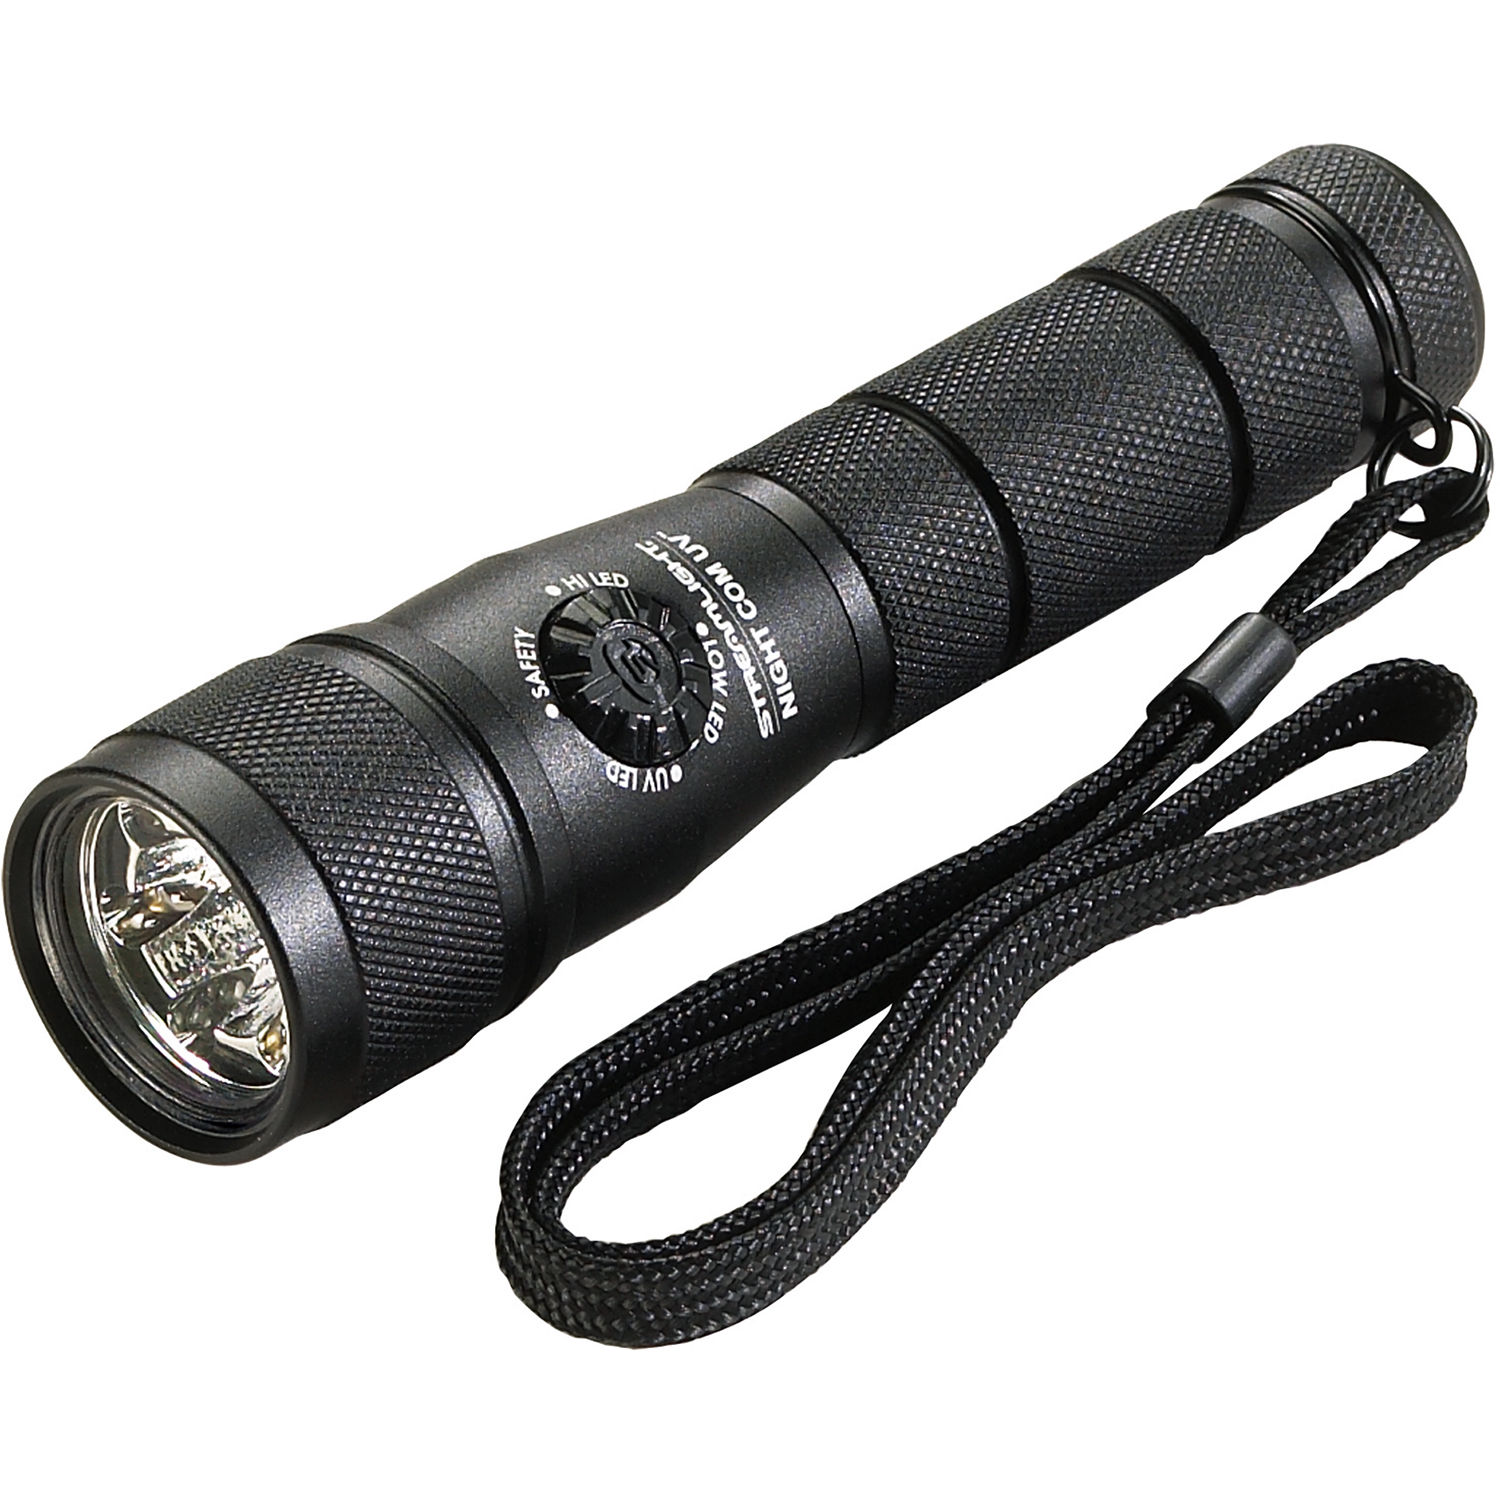 laser flashlight